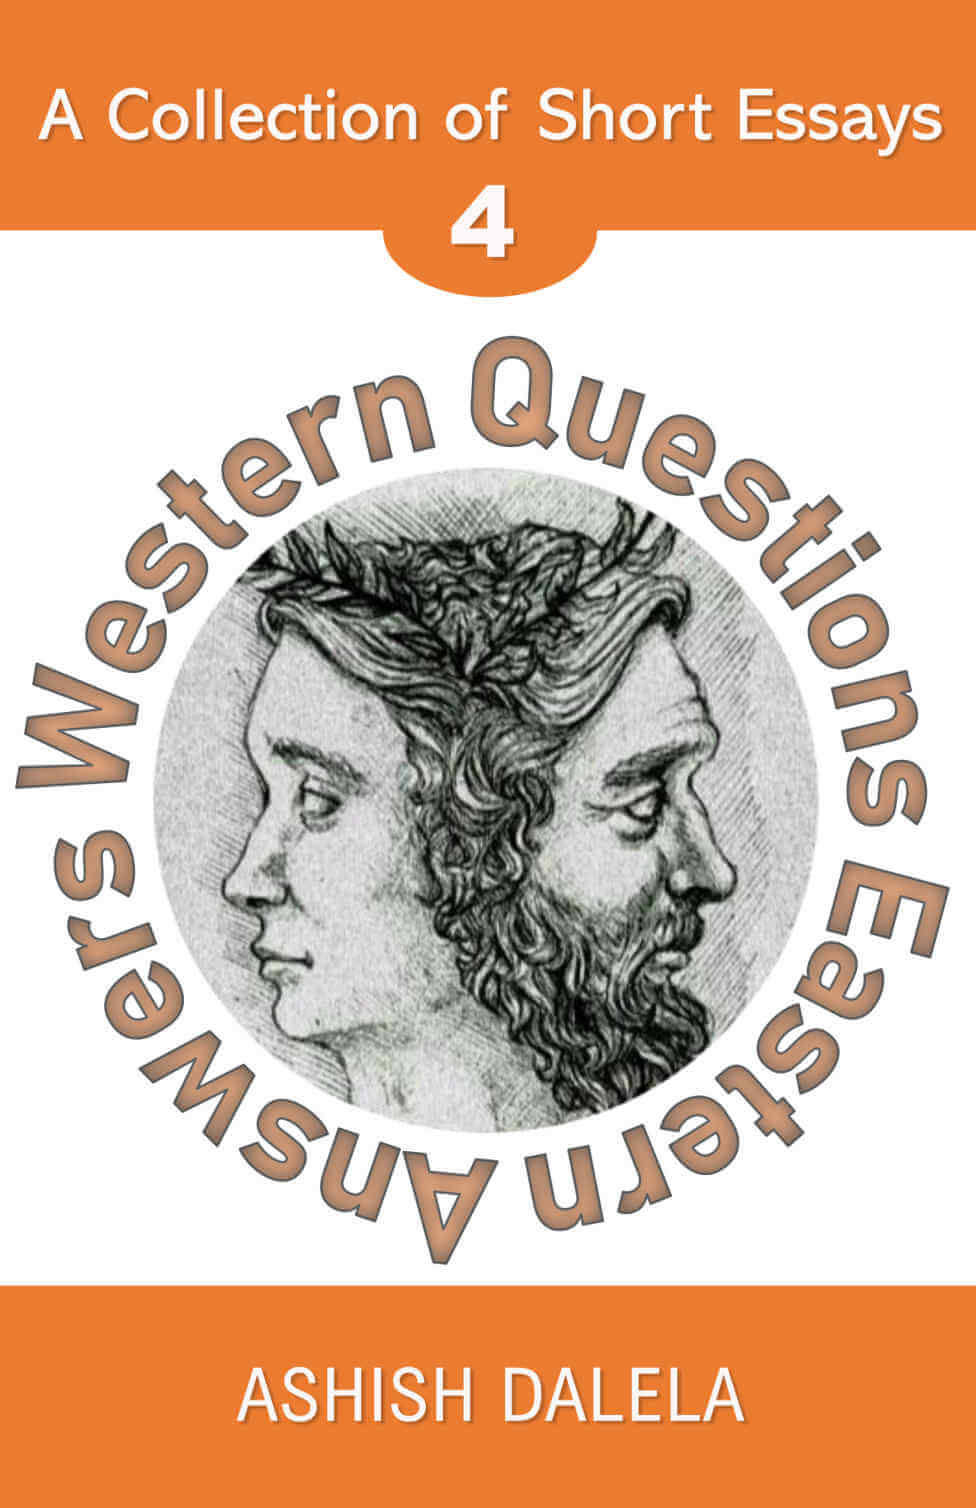 Westliche Fragen, östliche Antworten: Eine Sammlung kurzer Essays - Band 4